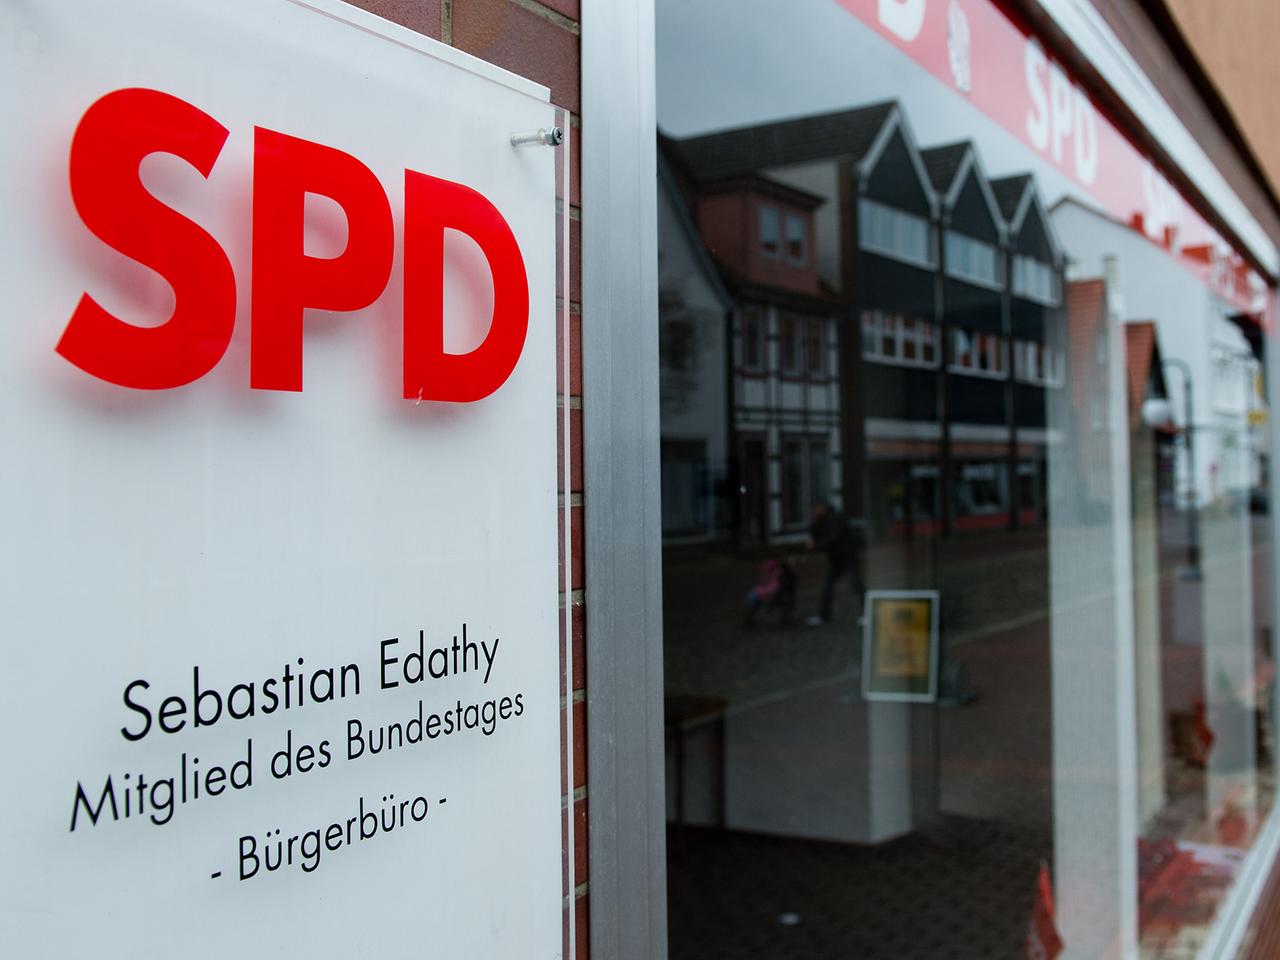 Blick auf das Bürgerbüro von Sebastian Edathy: links ein Schild mit der Aufschrift "SPD - Sebastian Edathy - Mitglied des Bundestages - Bürgerbüro" - rechts davon der Eingang.